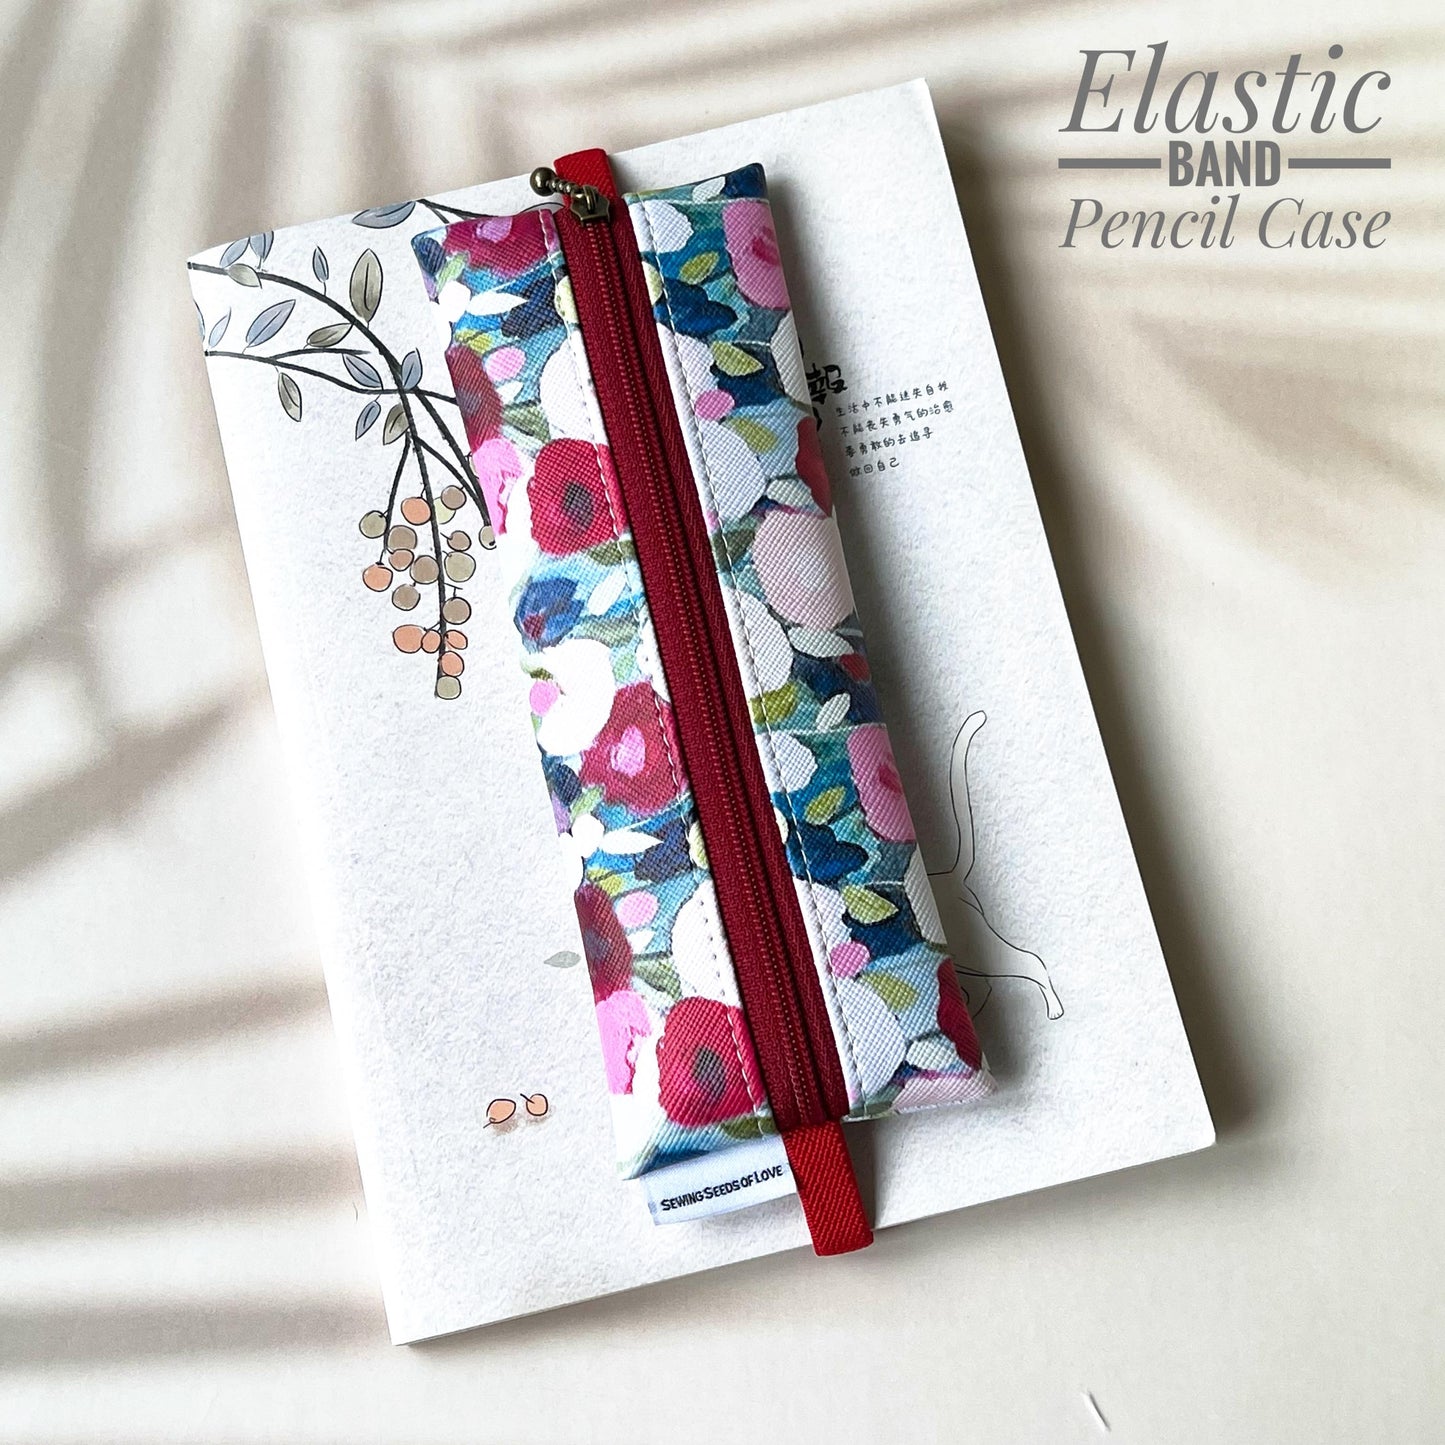 Elastic Band Pencil Case - EBPC11